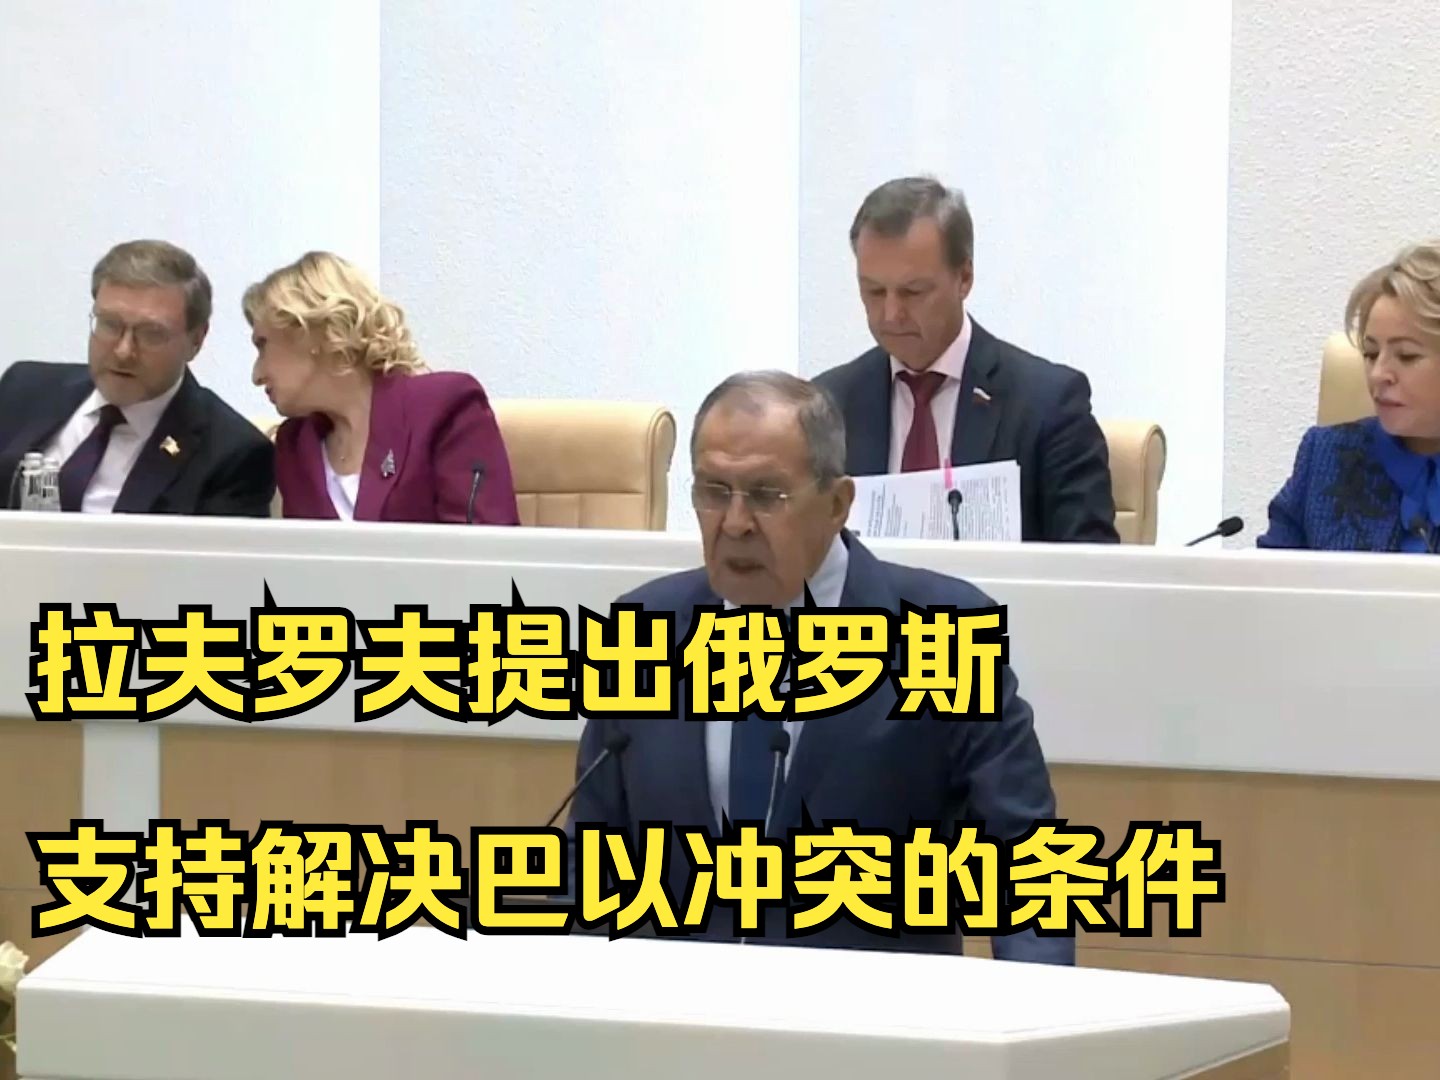 拉夫罗夫提出俄罗斯支持解决巴以冲突的条件